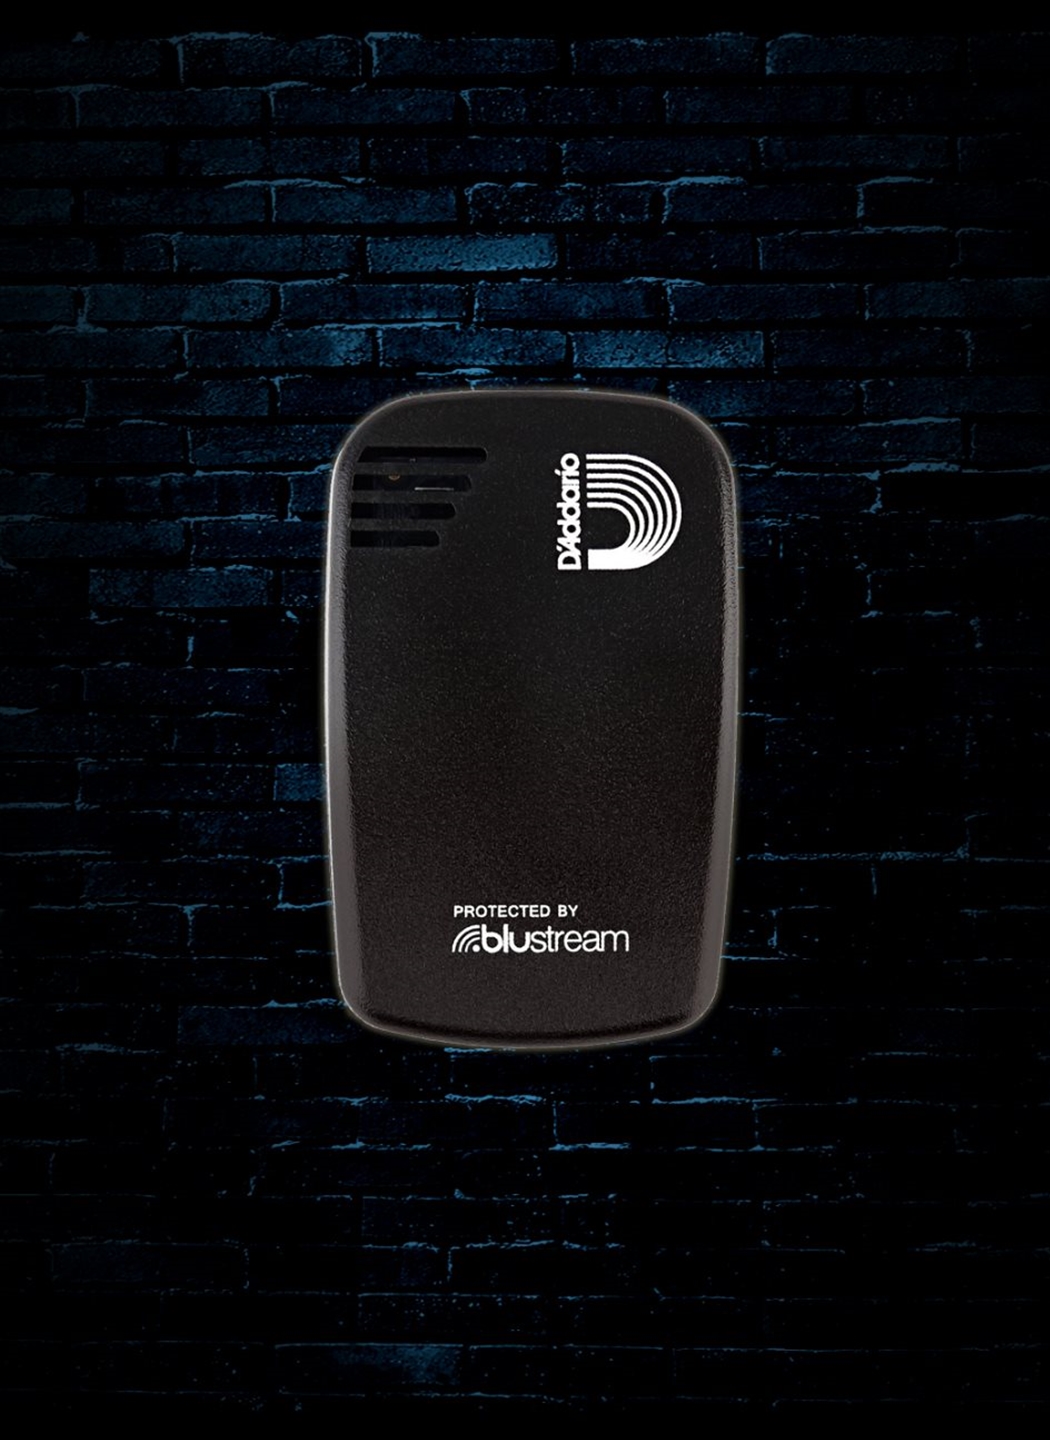 D'Addario Humiditrak Bluetooth Humidity and Temperature Sensor